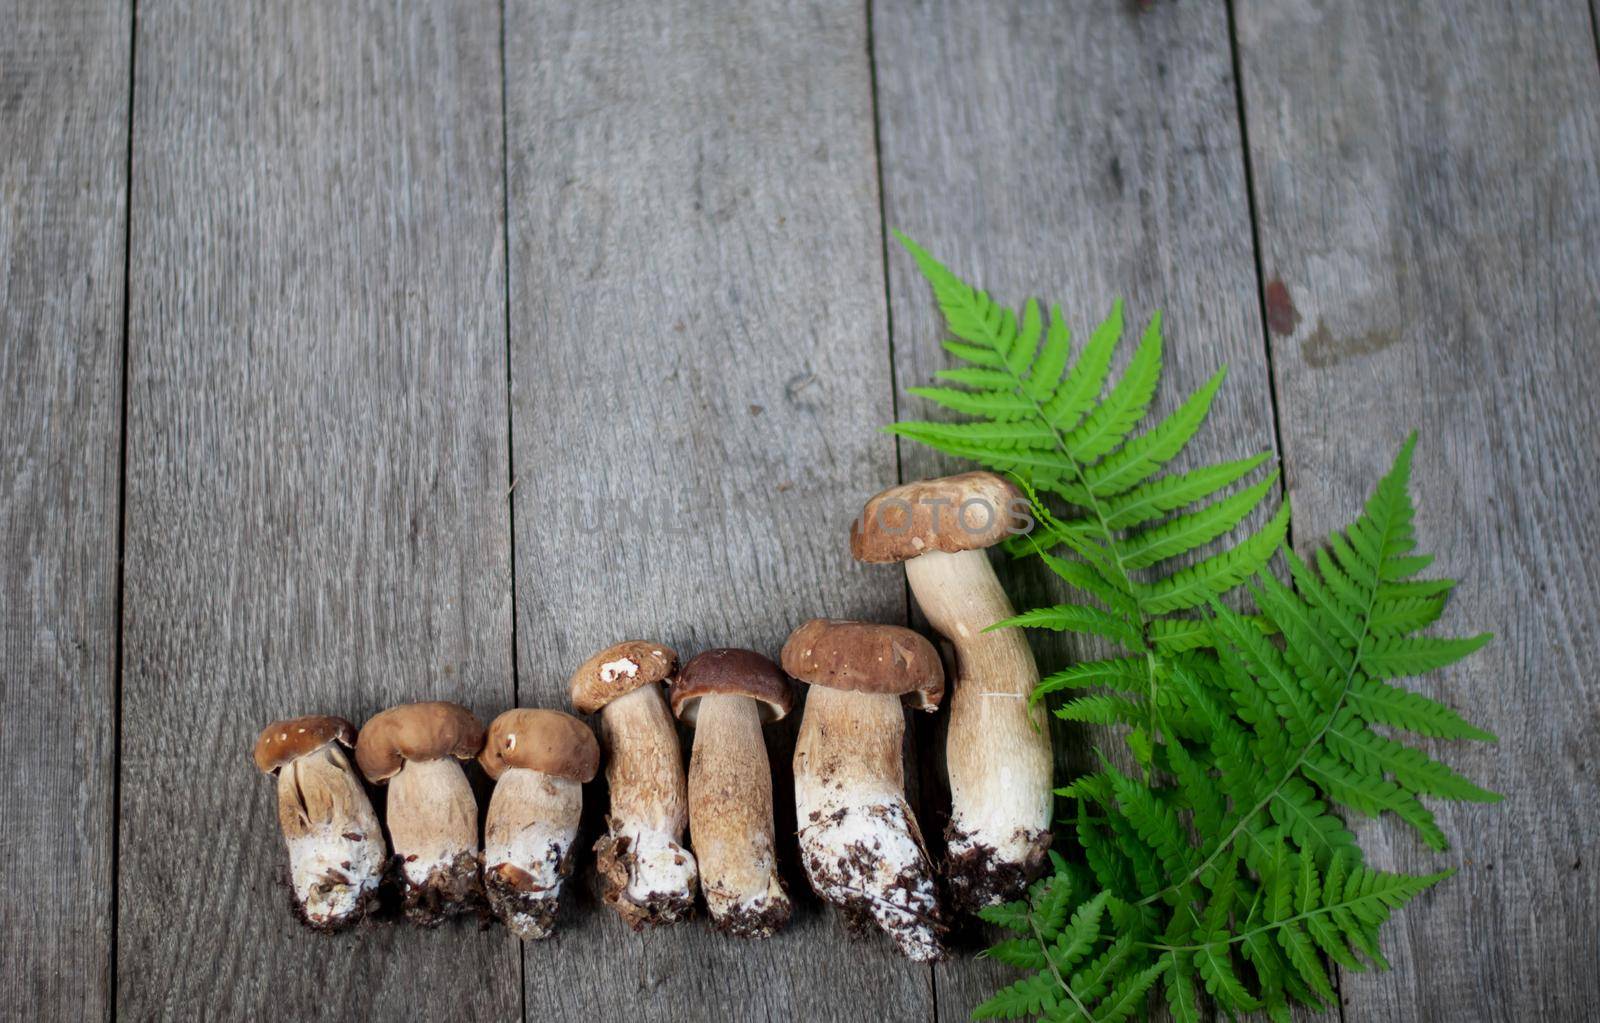 porcini mushroom on wooden background by maramorosz